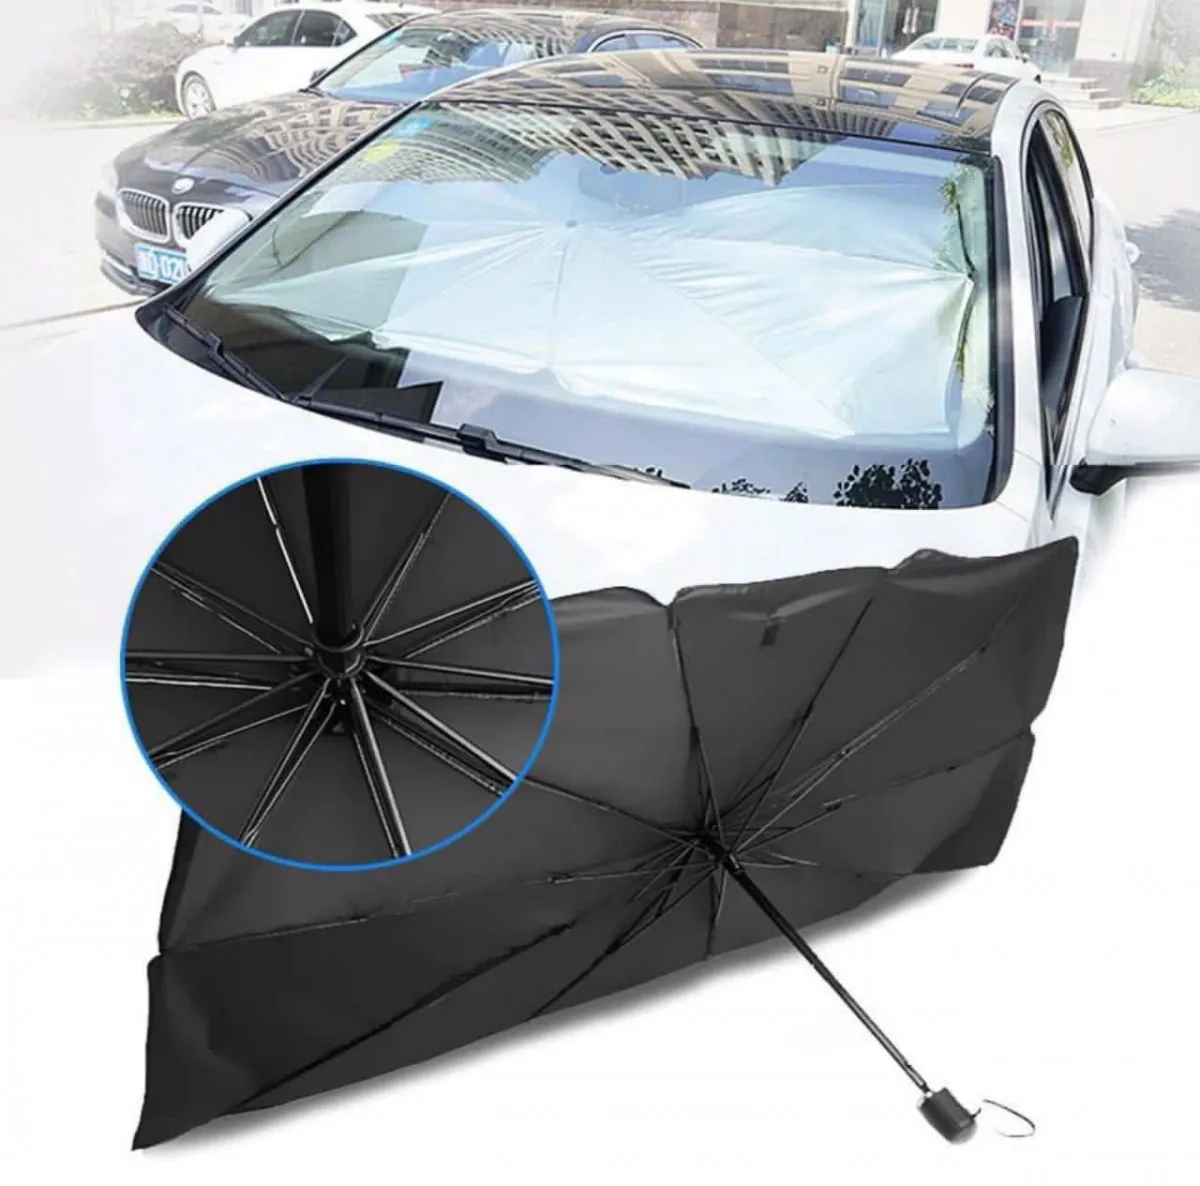 Солнцезащитная шторка зонт автомобильный на лобовое стекло#1